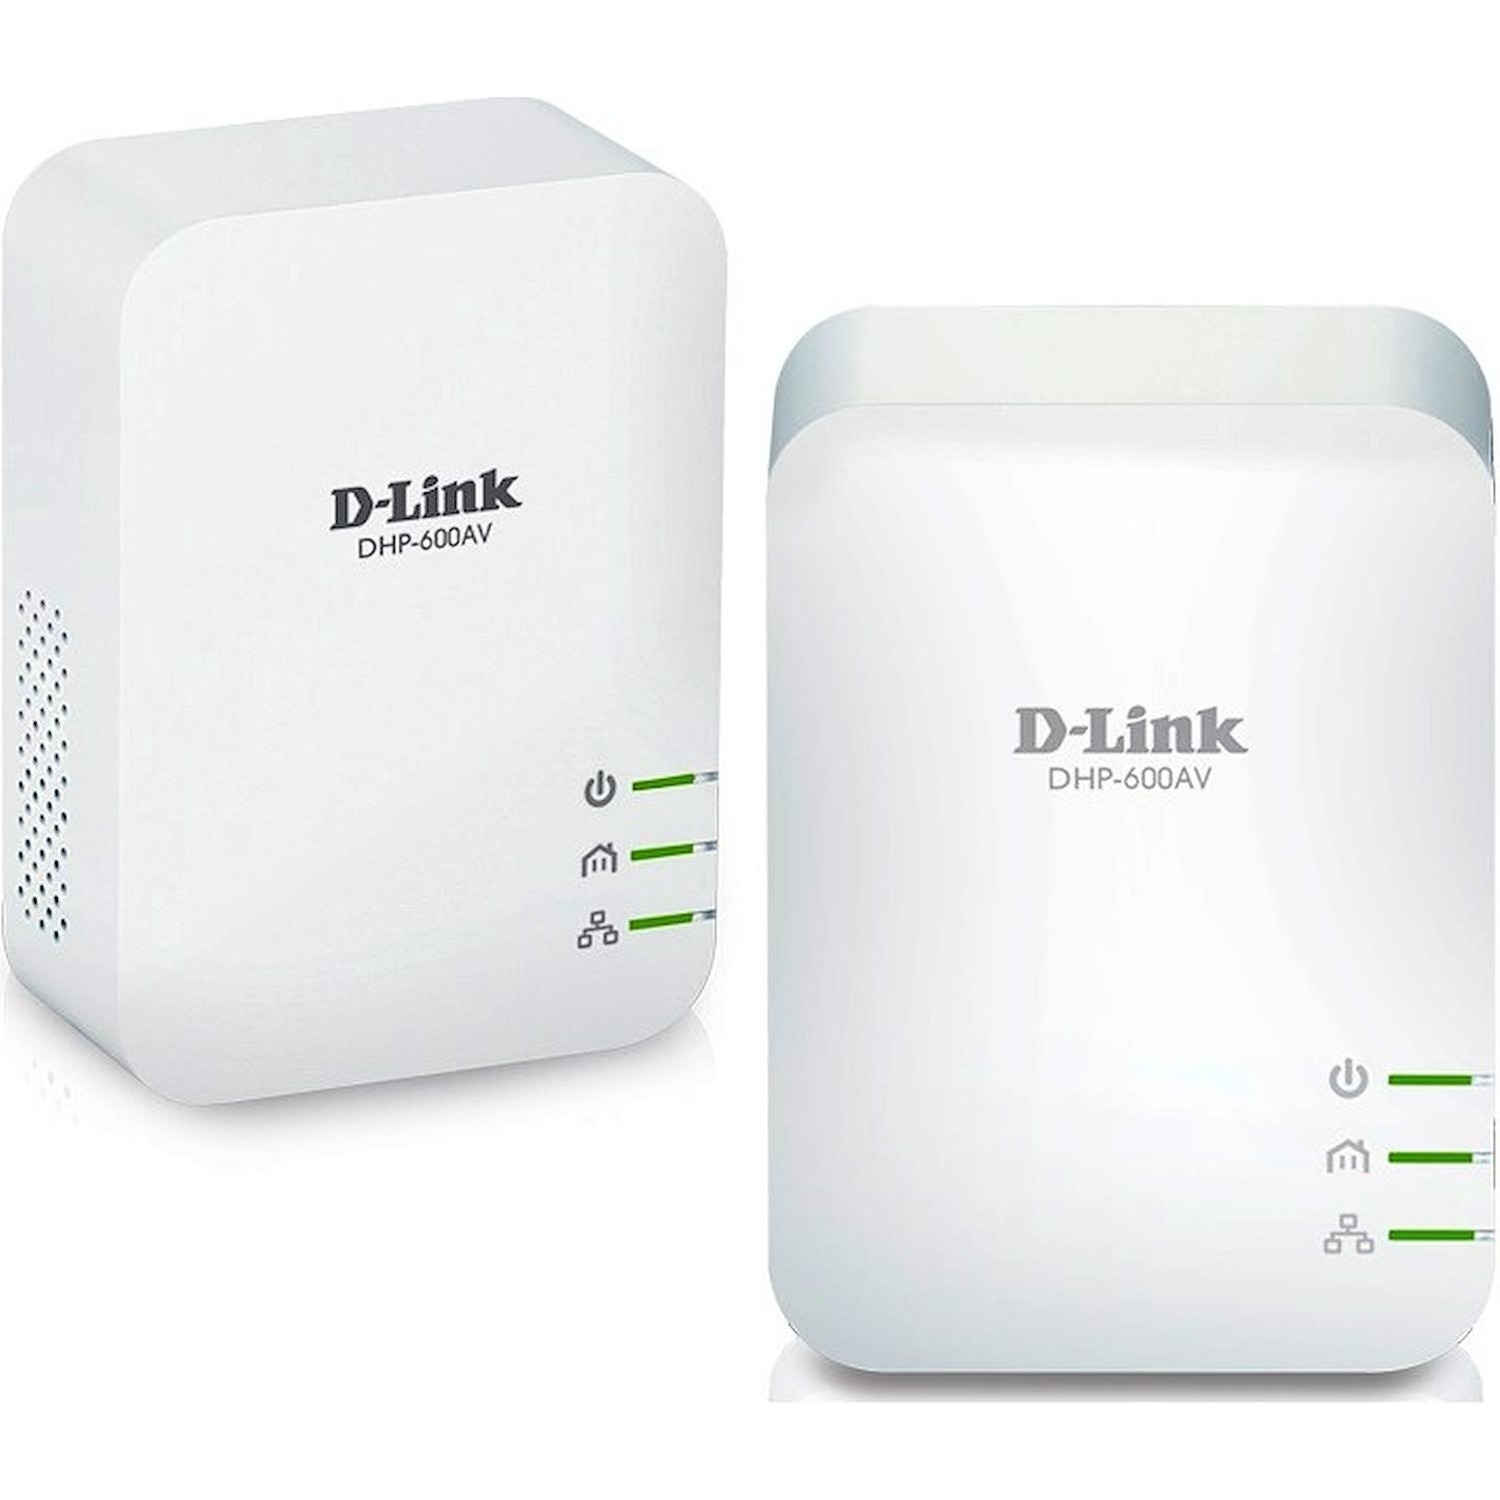 Immagine per Powerline kit D-Link AV600 gigabit 2 pezzi da DIMOStore